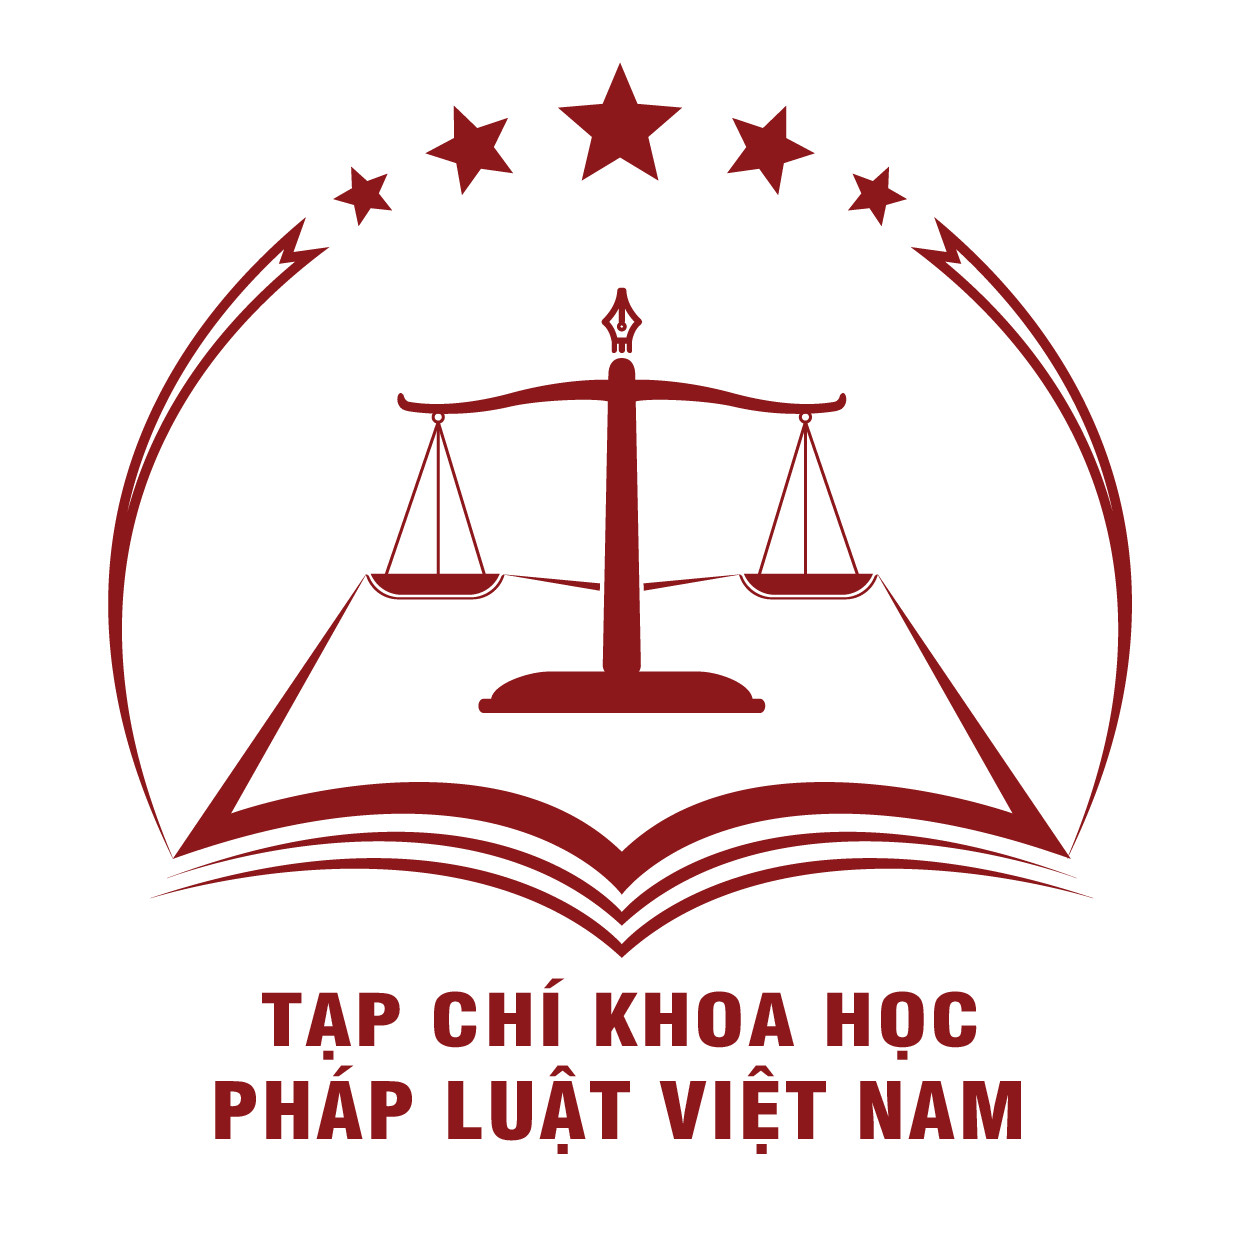 Tạp chí Khoa học Pháp luật Việt Nam